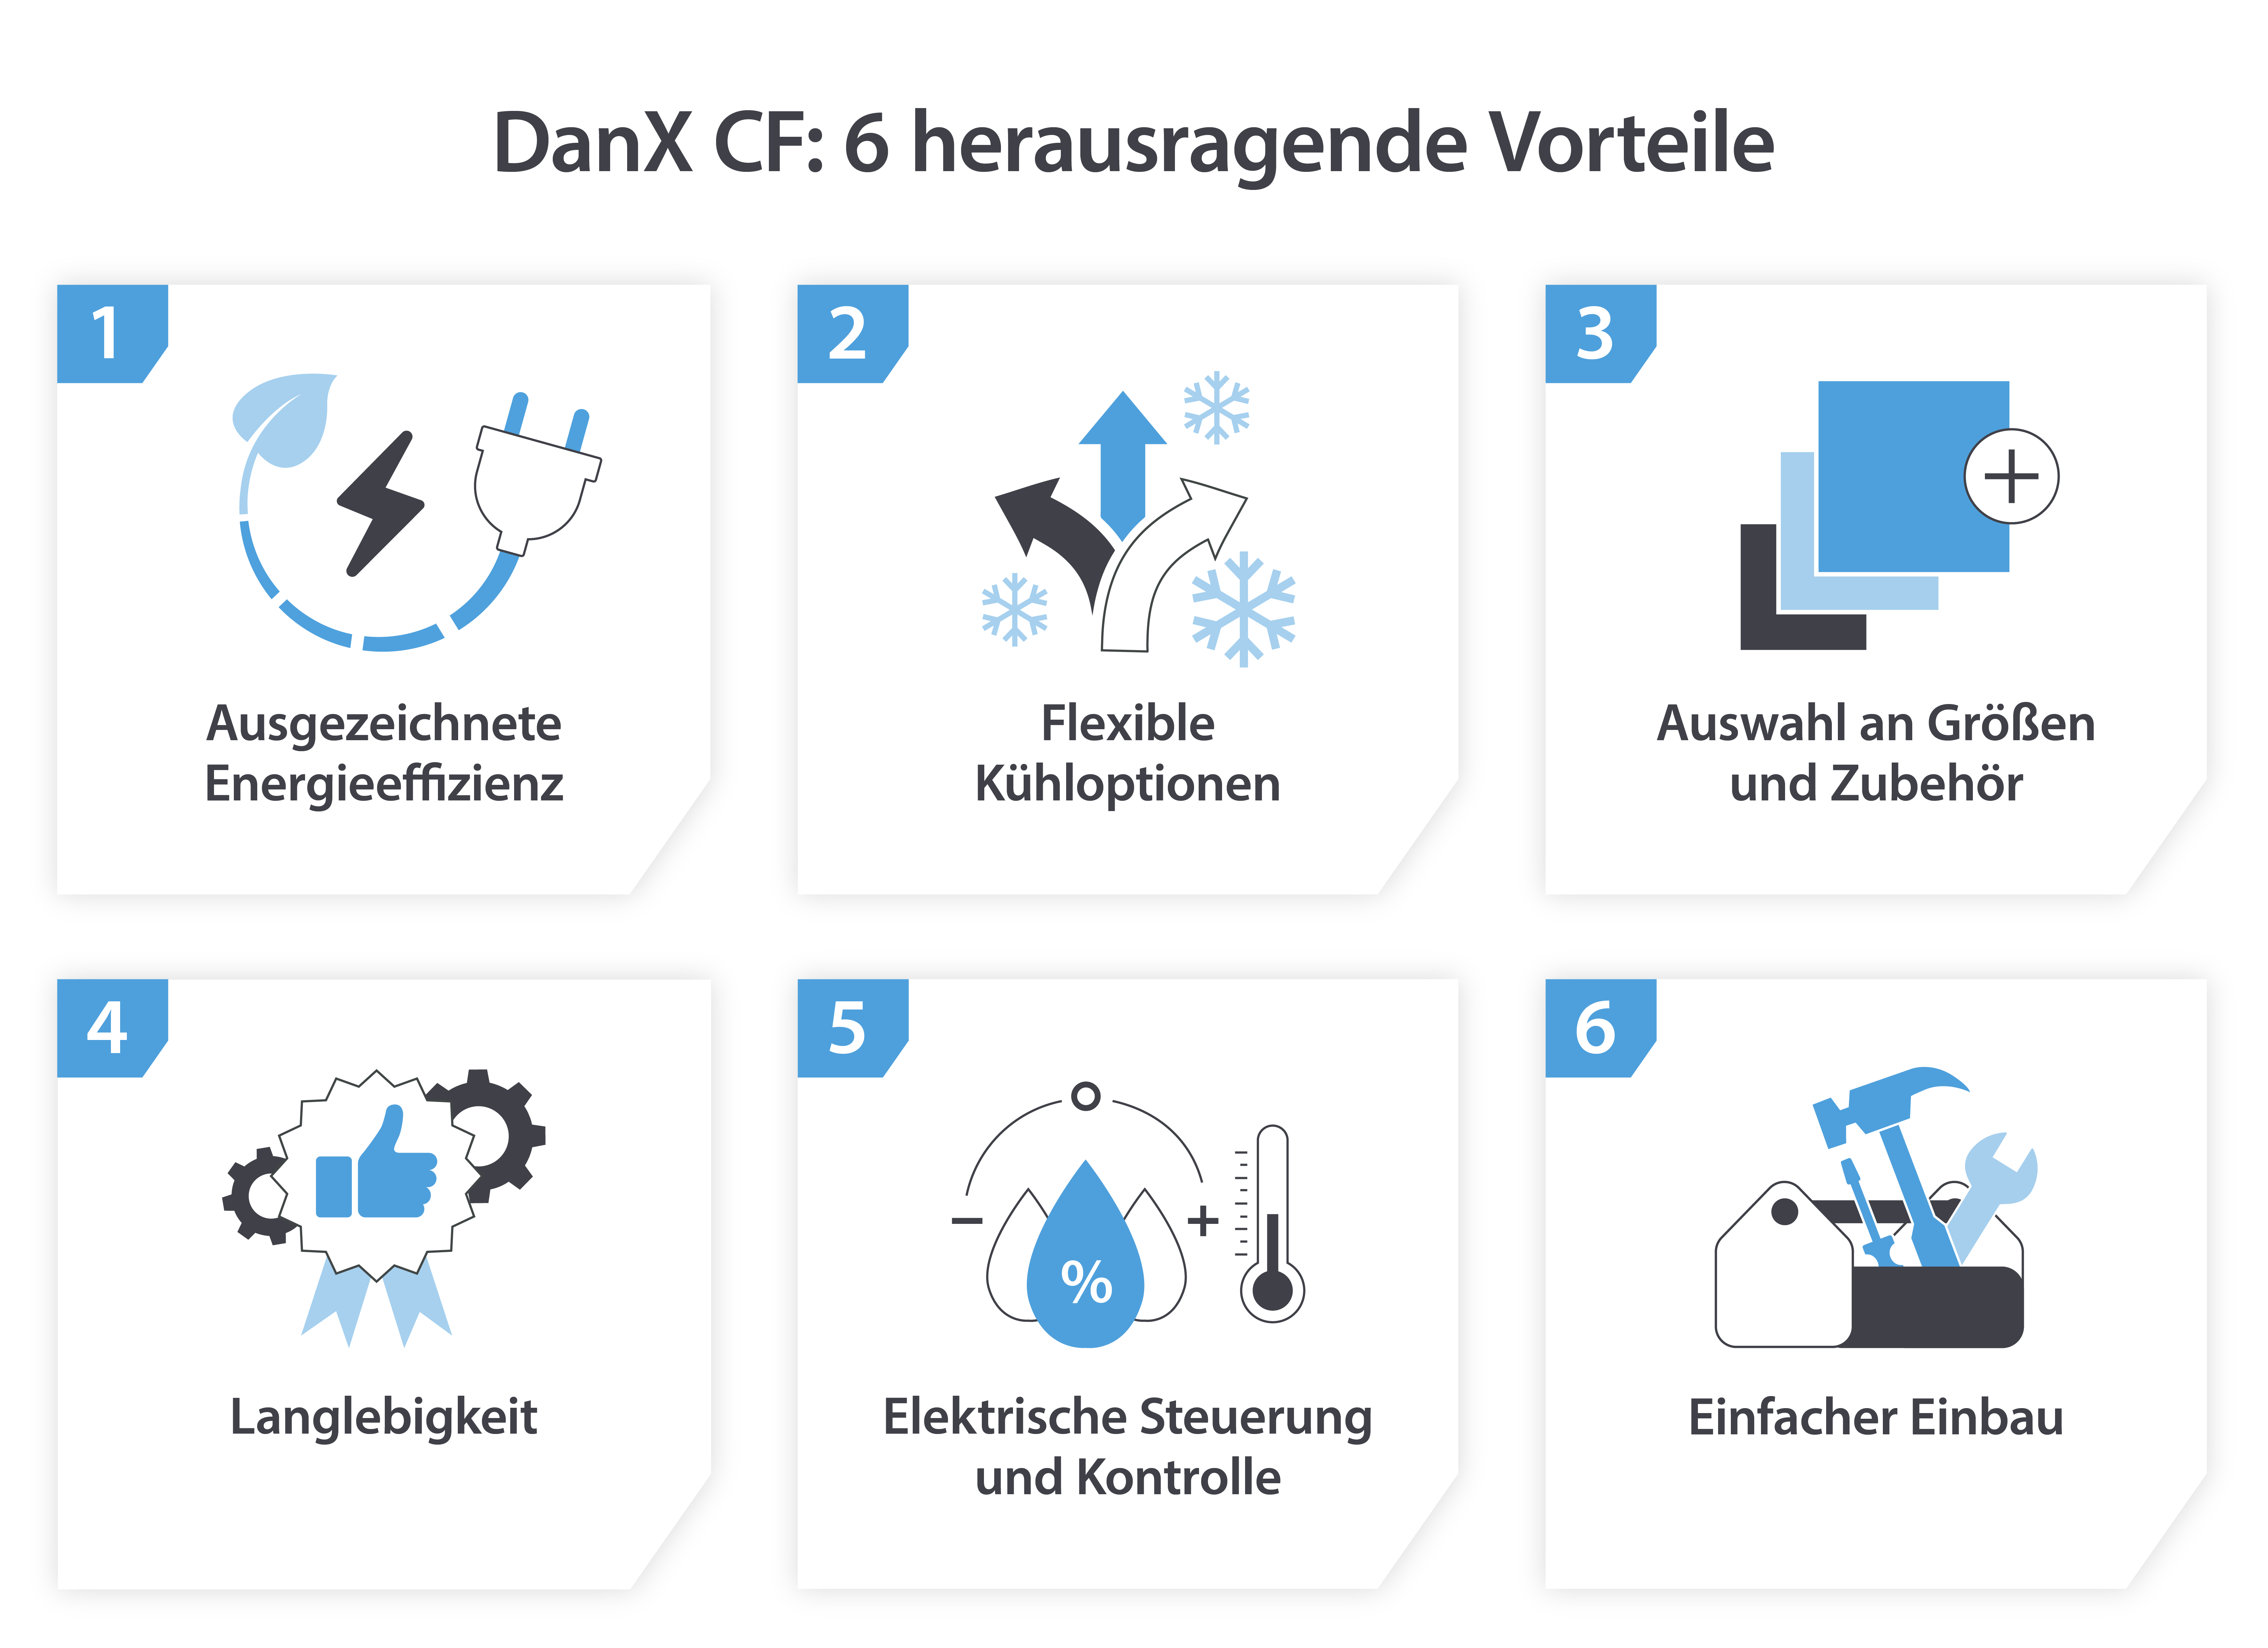 Die 6 herausragenden Vorteile des DanX CF